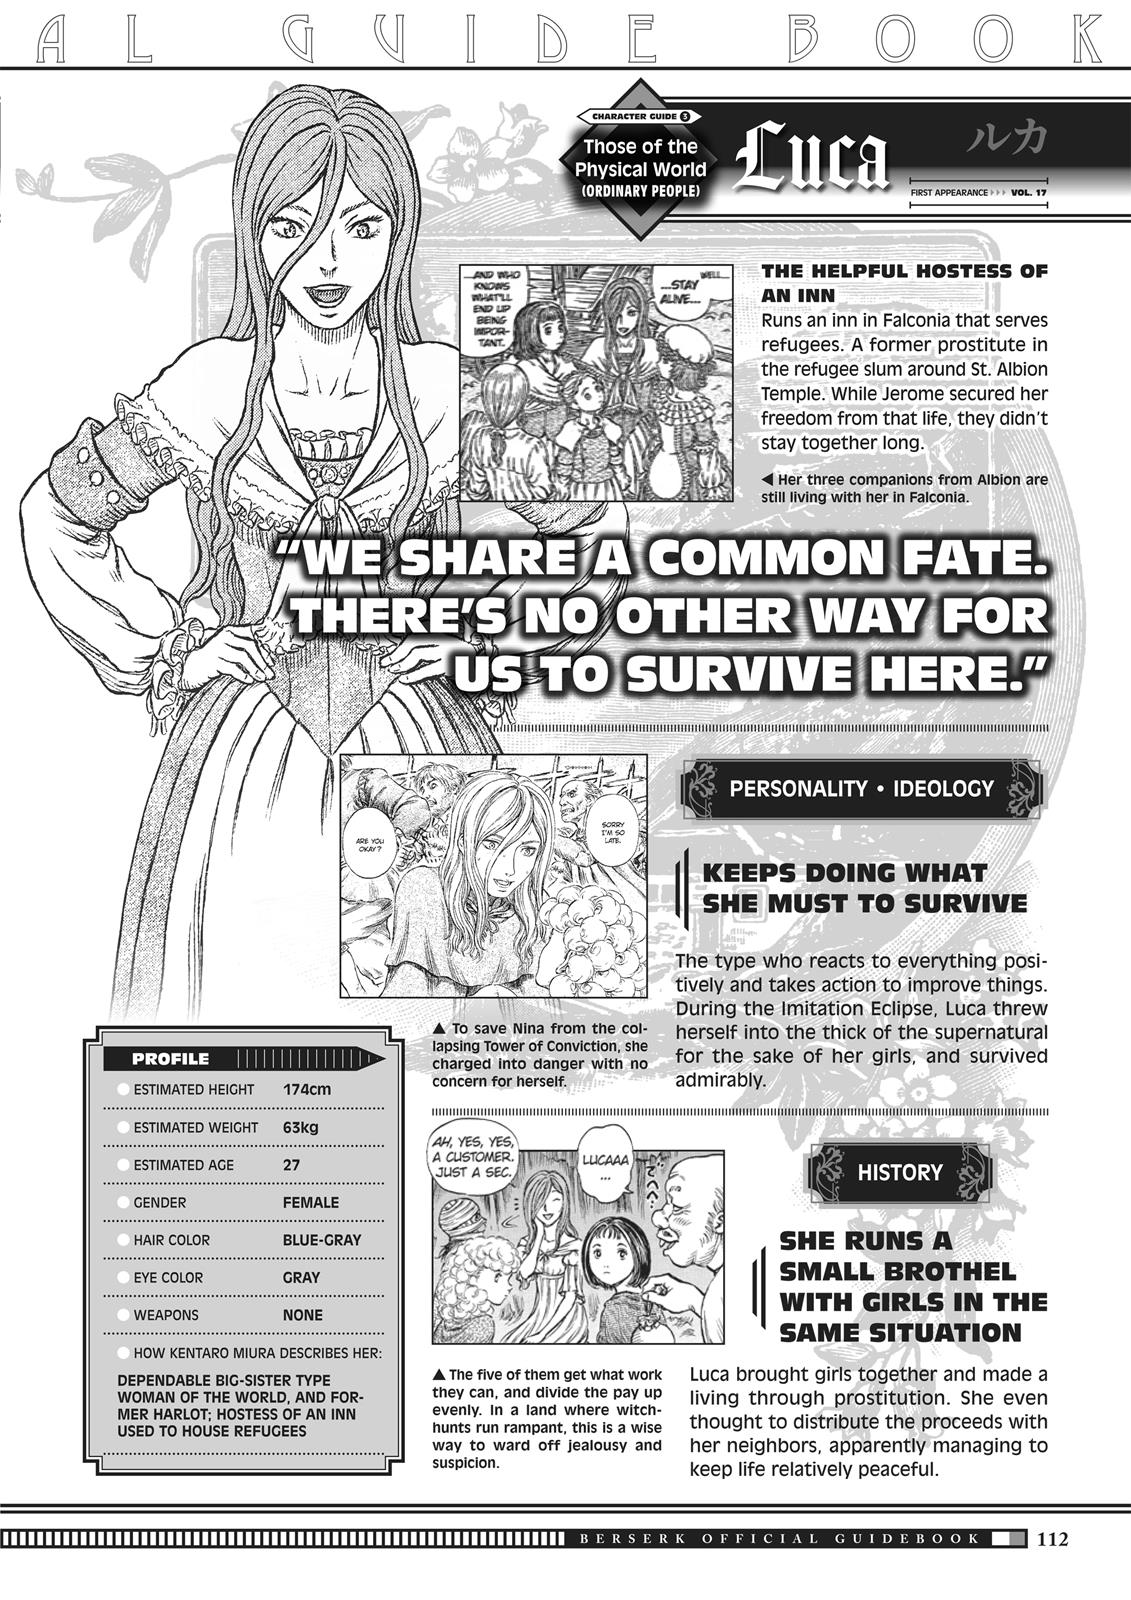 Berserk Manga Chapter 350.5 image 110